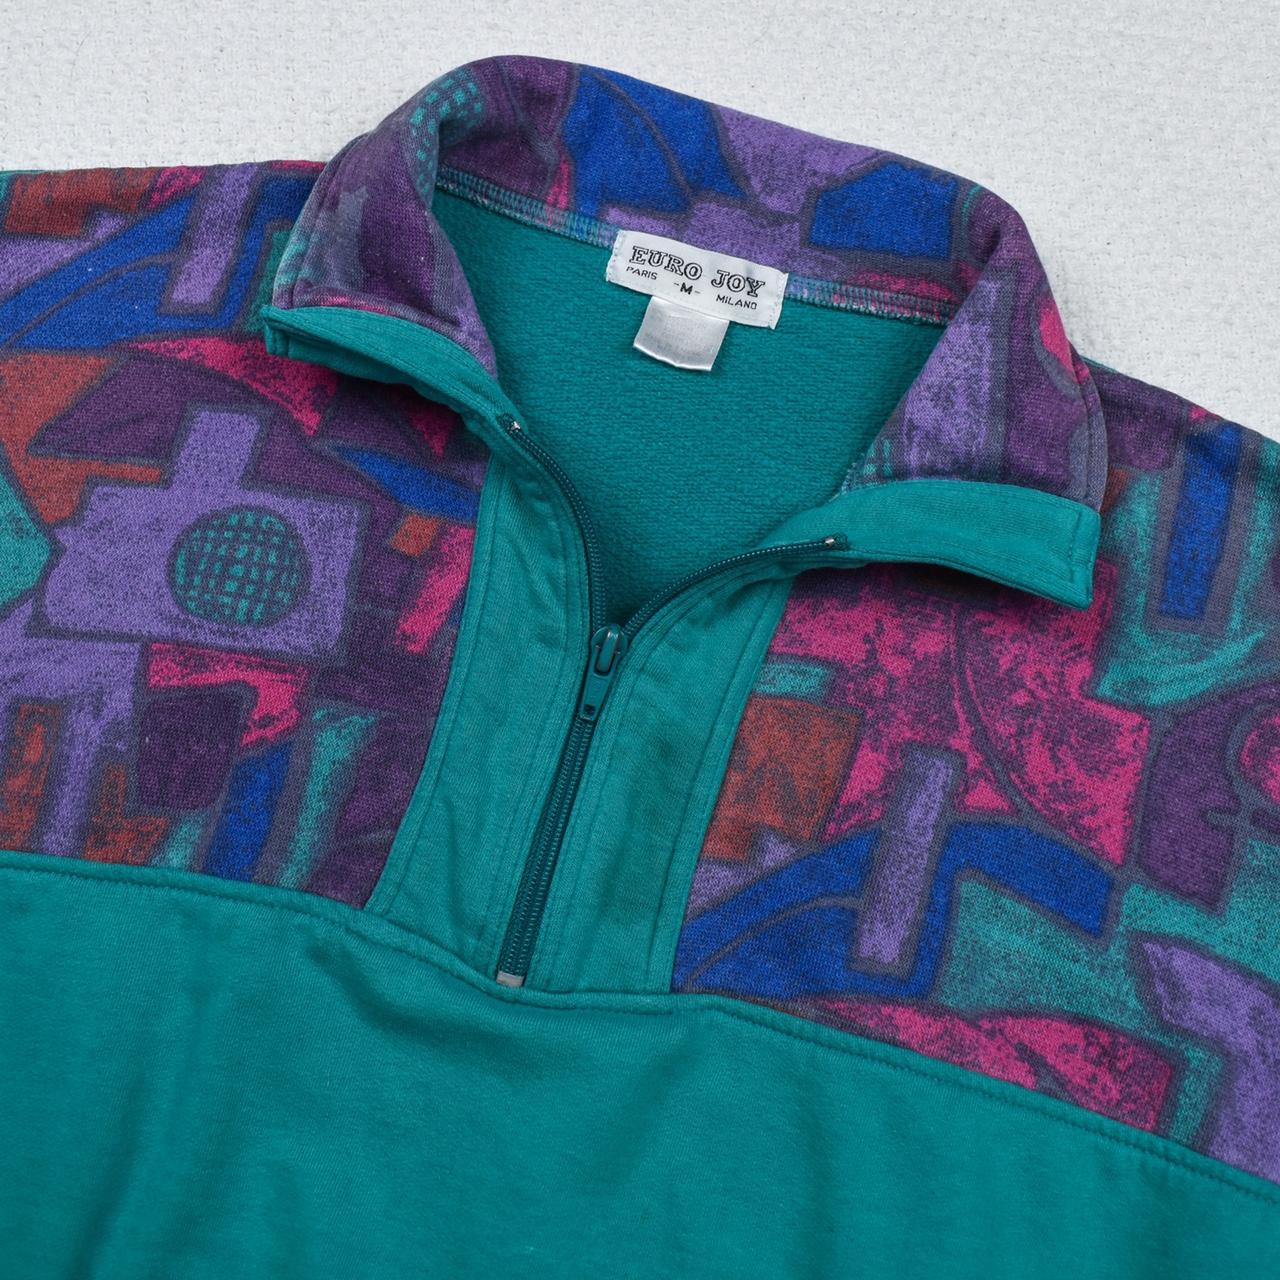 Vintage 80s funky sweatshirt jacket Teal green... - Depop